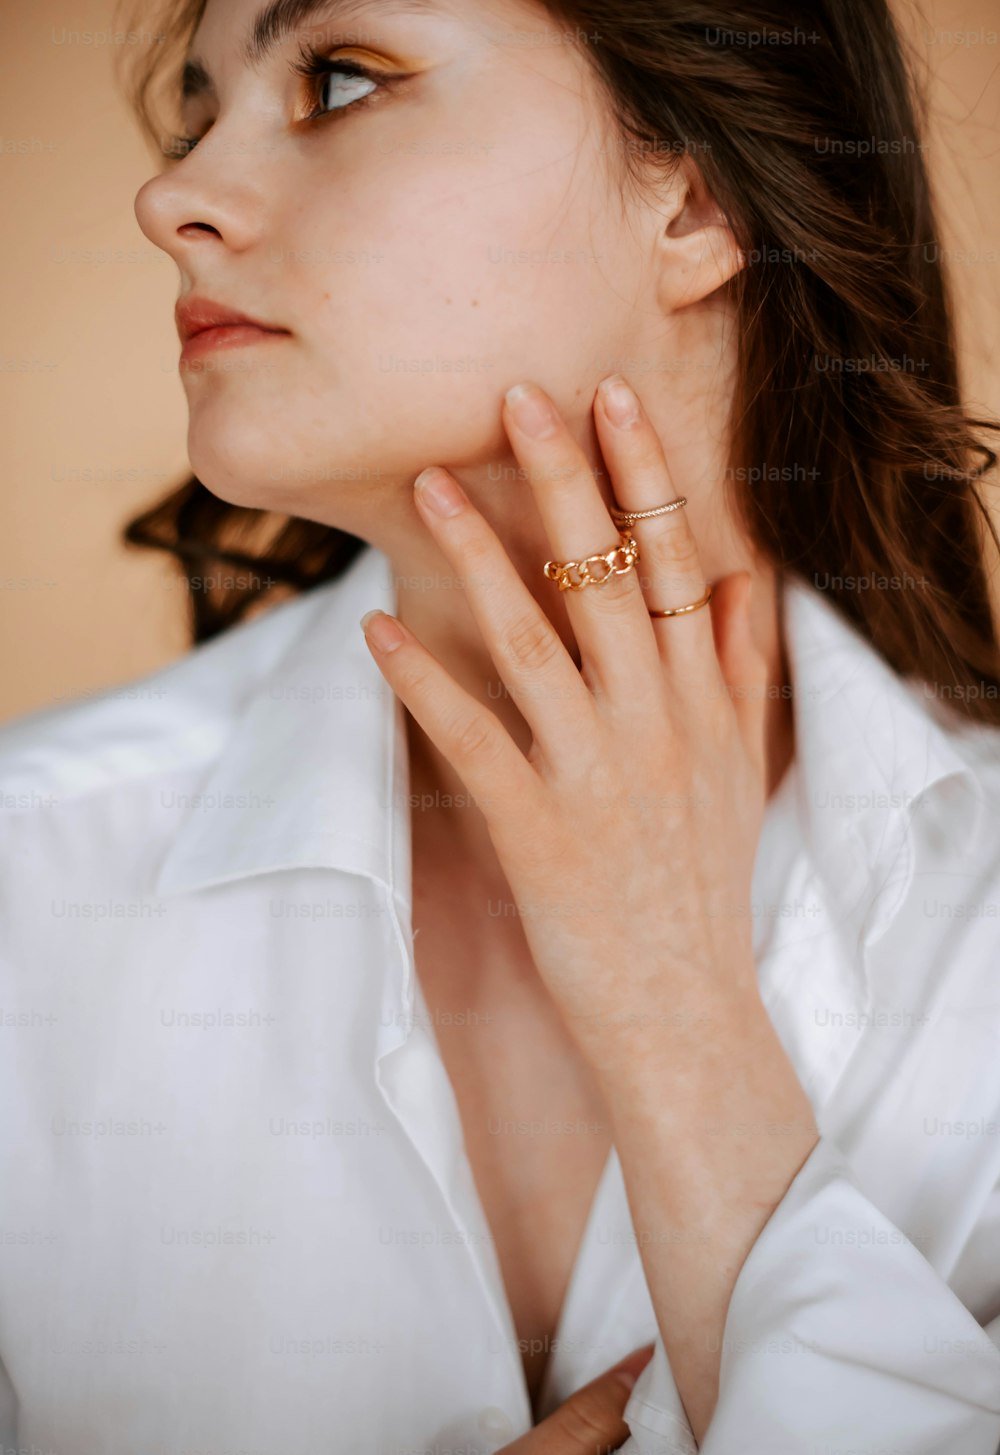 una donna che indossa una camicia bianca e un anello d'oro